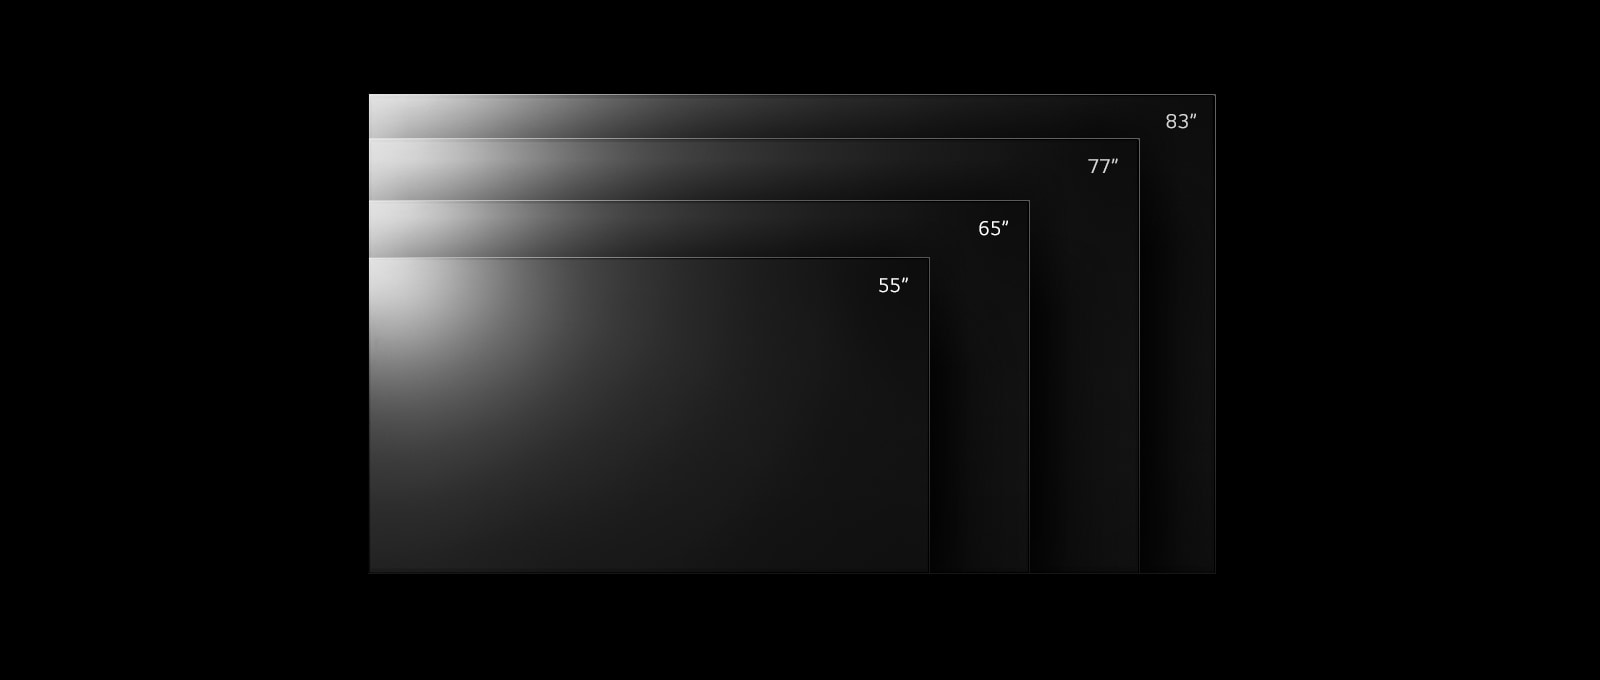 Linia telewizorów LG OLED G2 w różnych rozmiarach od 55 do 83 cali